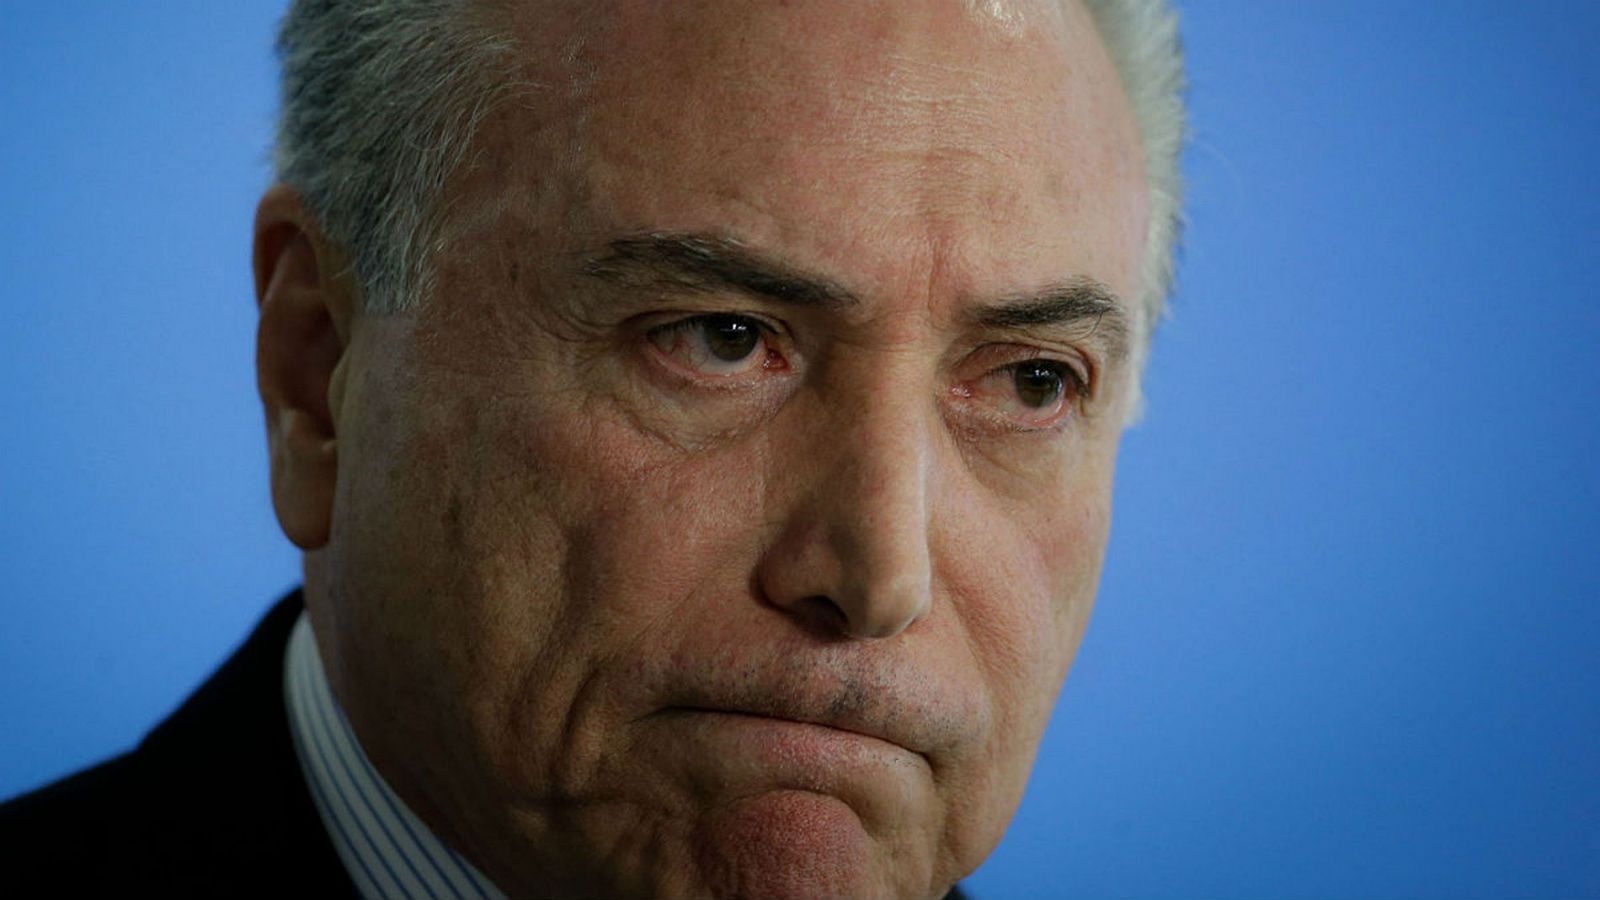 El expresidente de Brasil Michel Temer, ha sido arrestado por su vinculación a un caso de corrupción